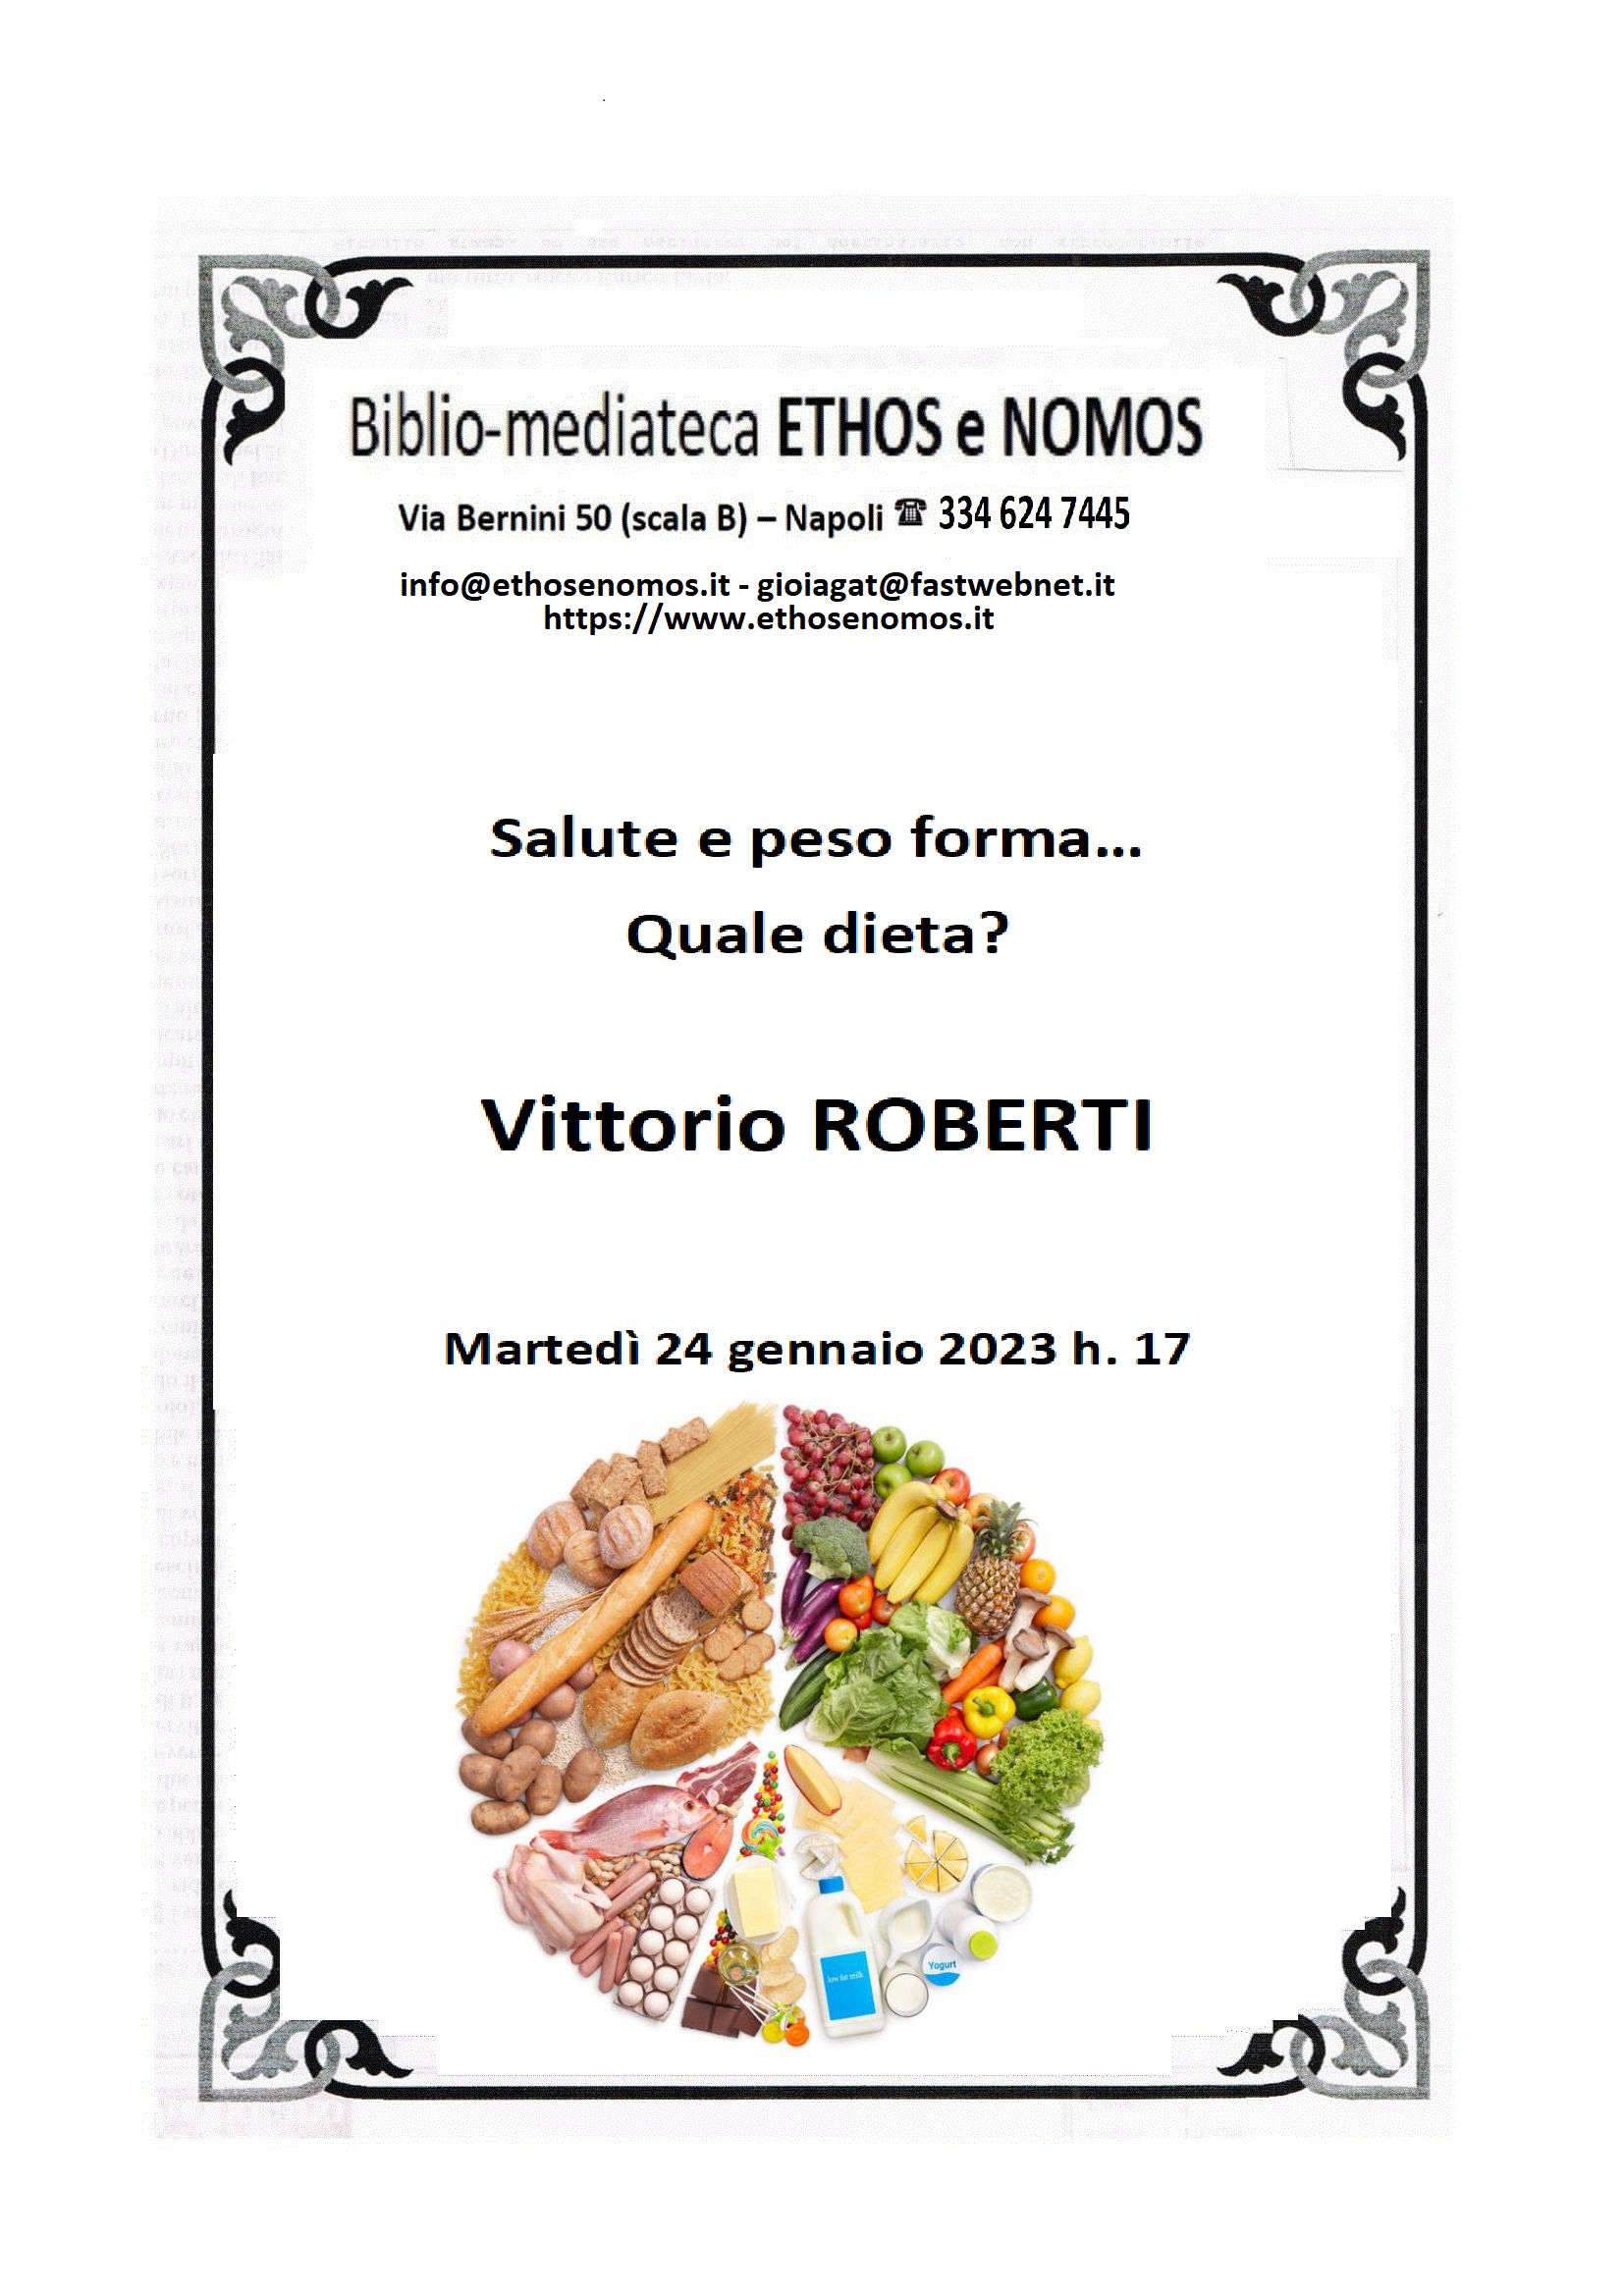 Vittorio ROBERTI - Salute e peso forma… quale dieta?